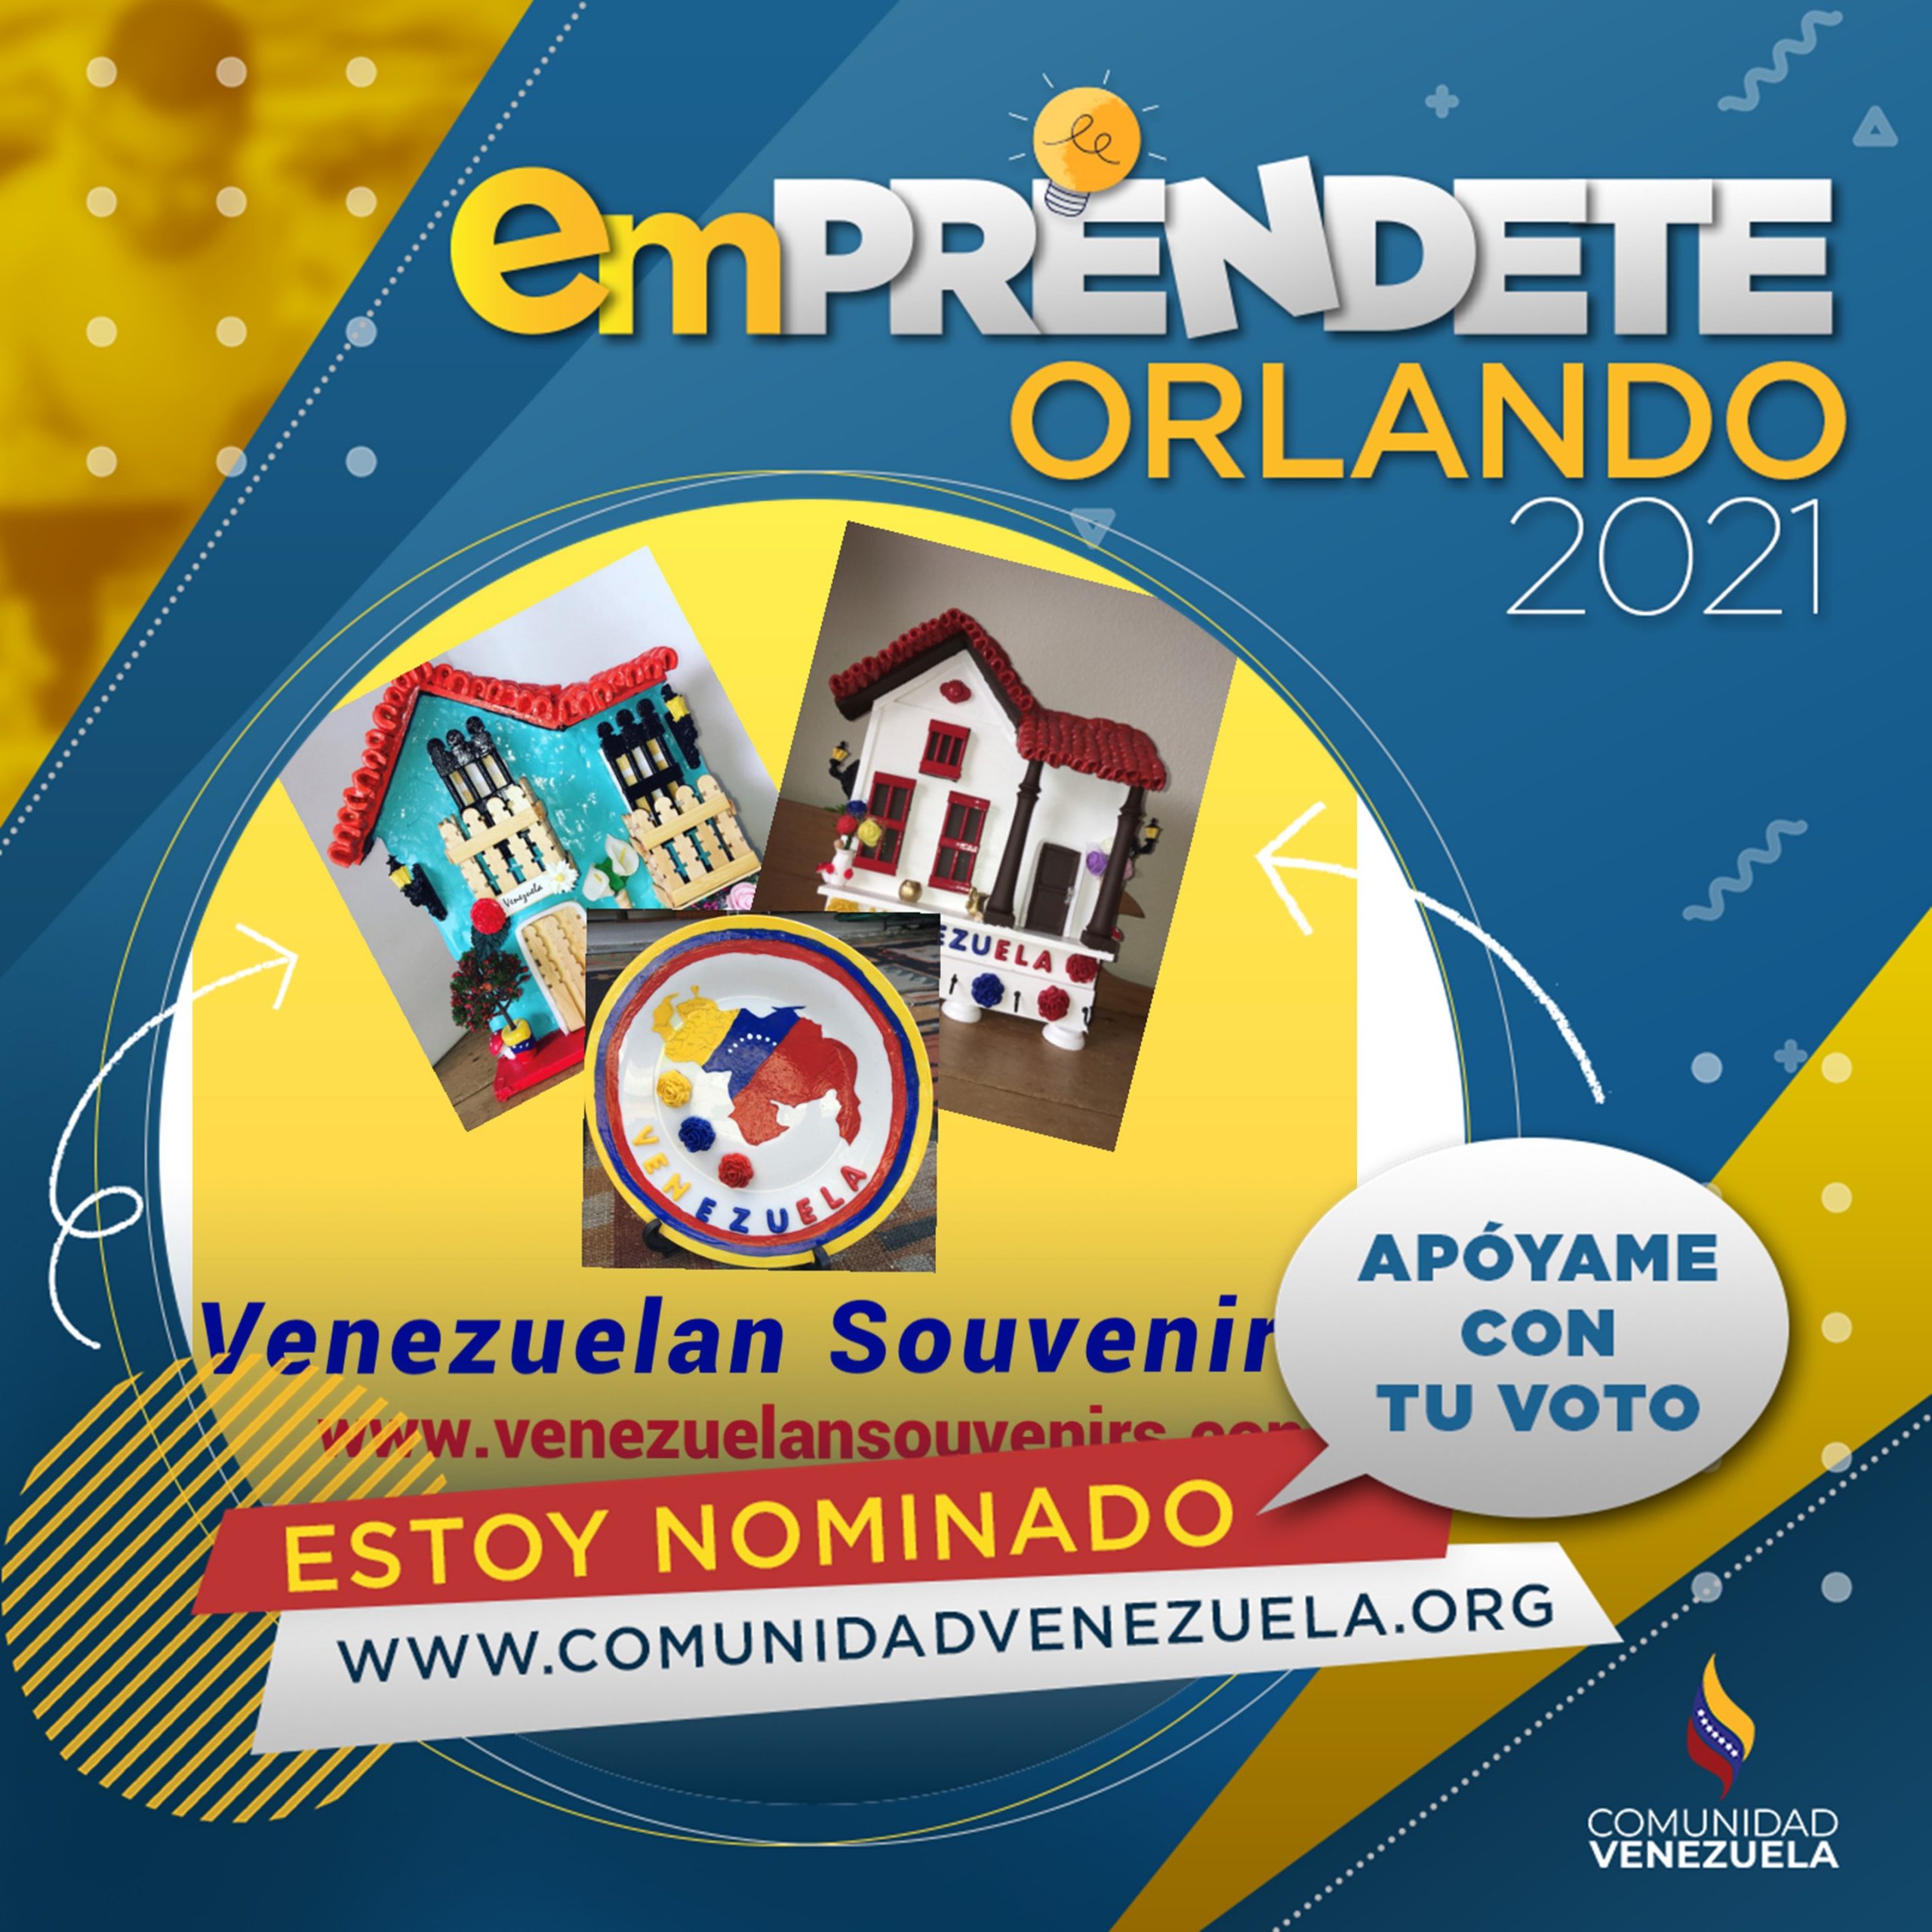 Vota por Venezuela Souvenirs